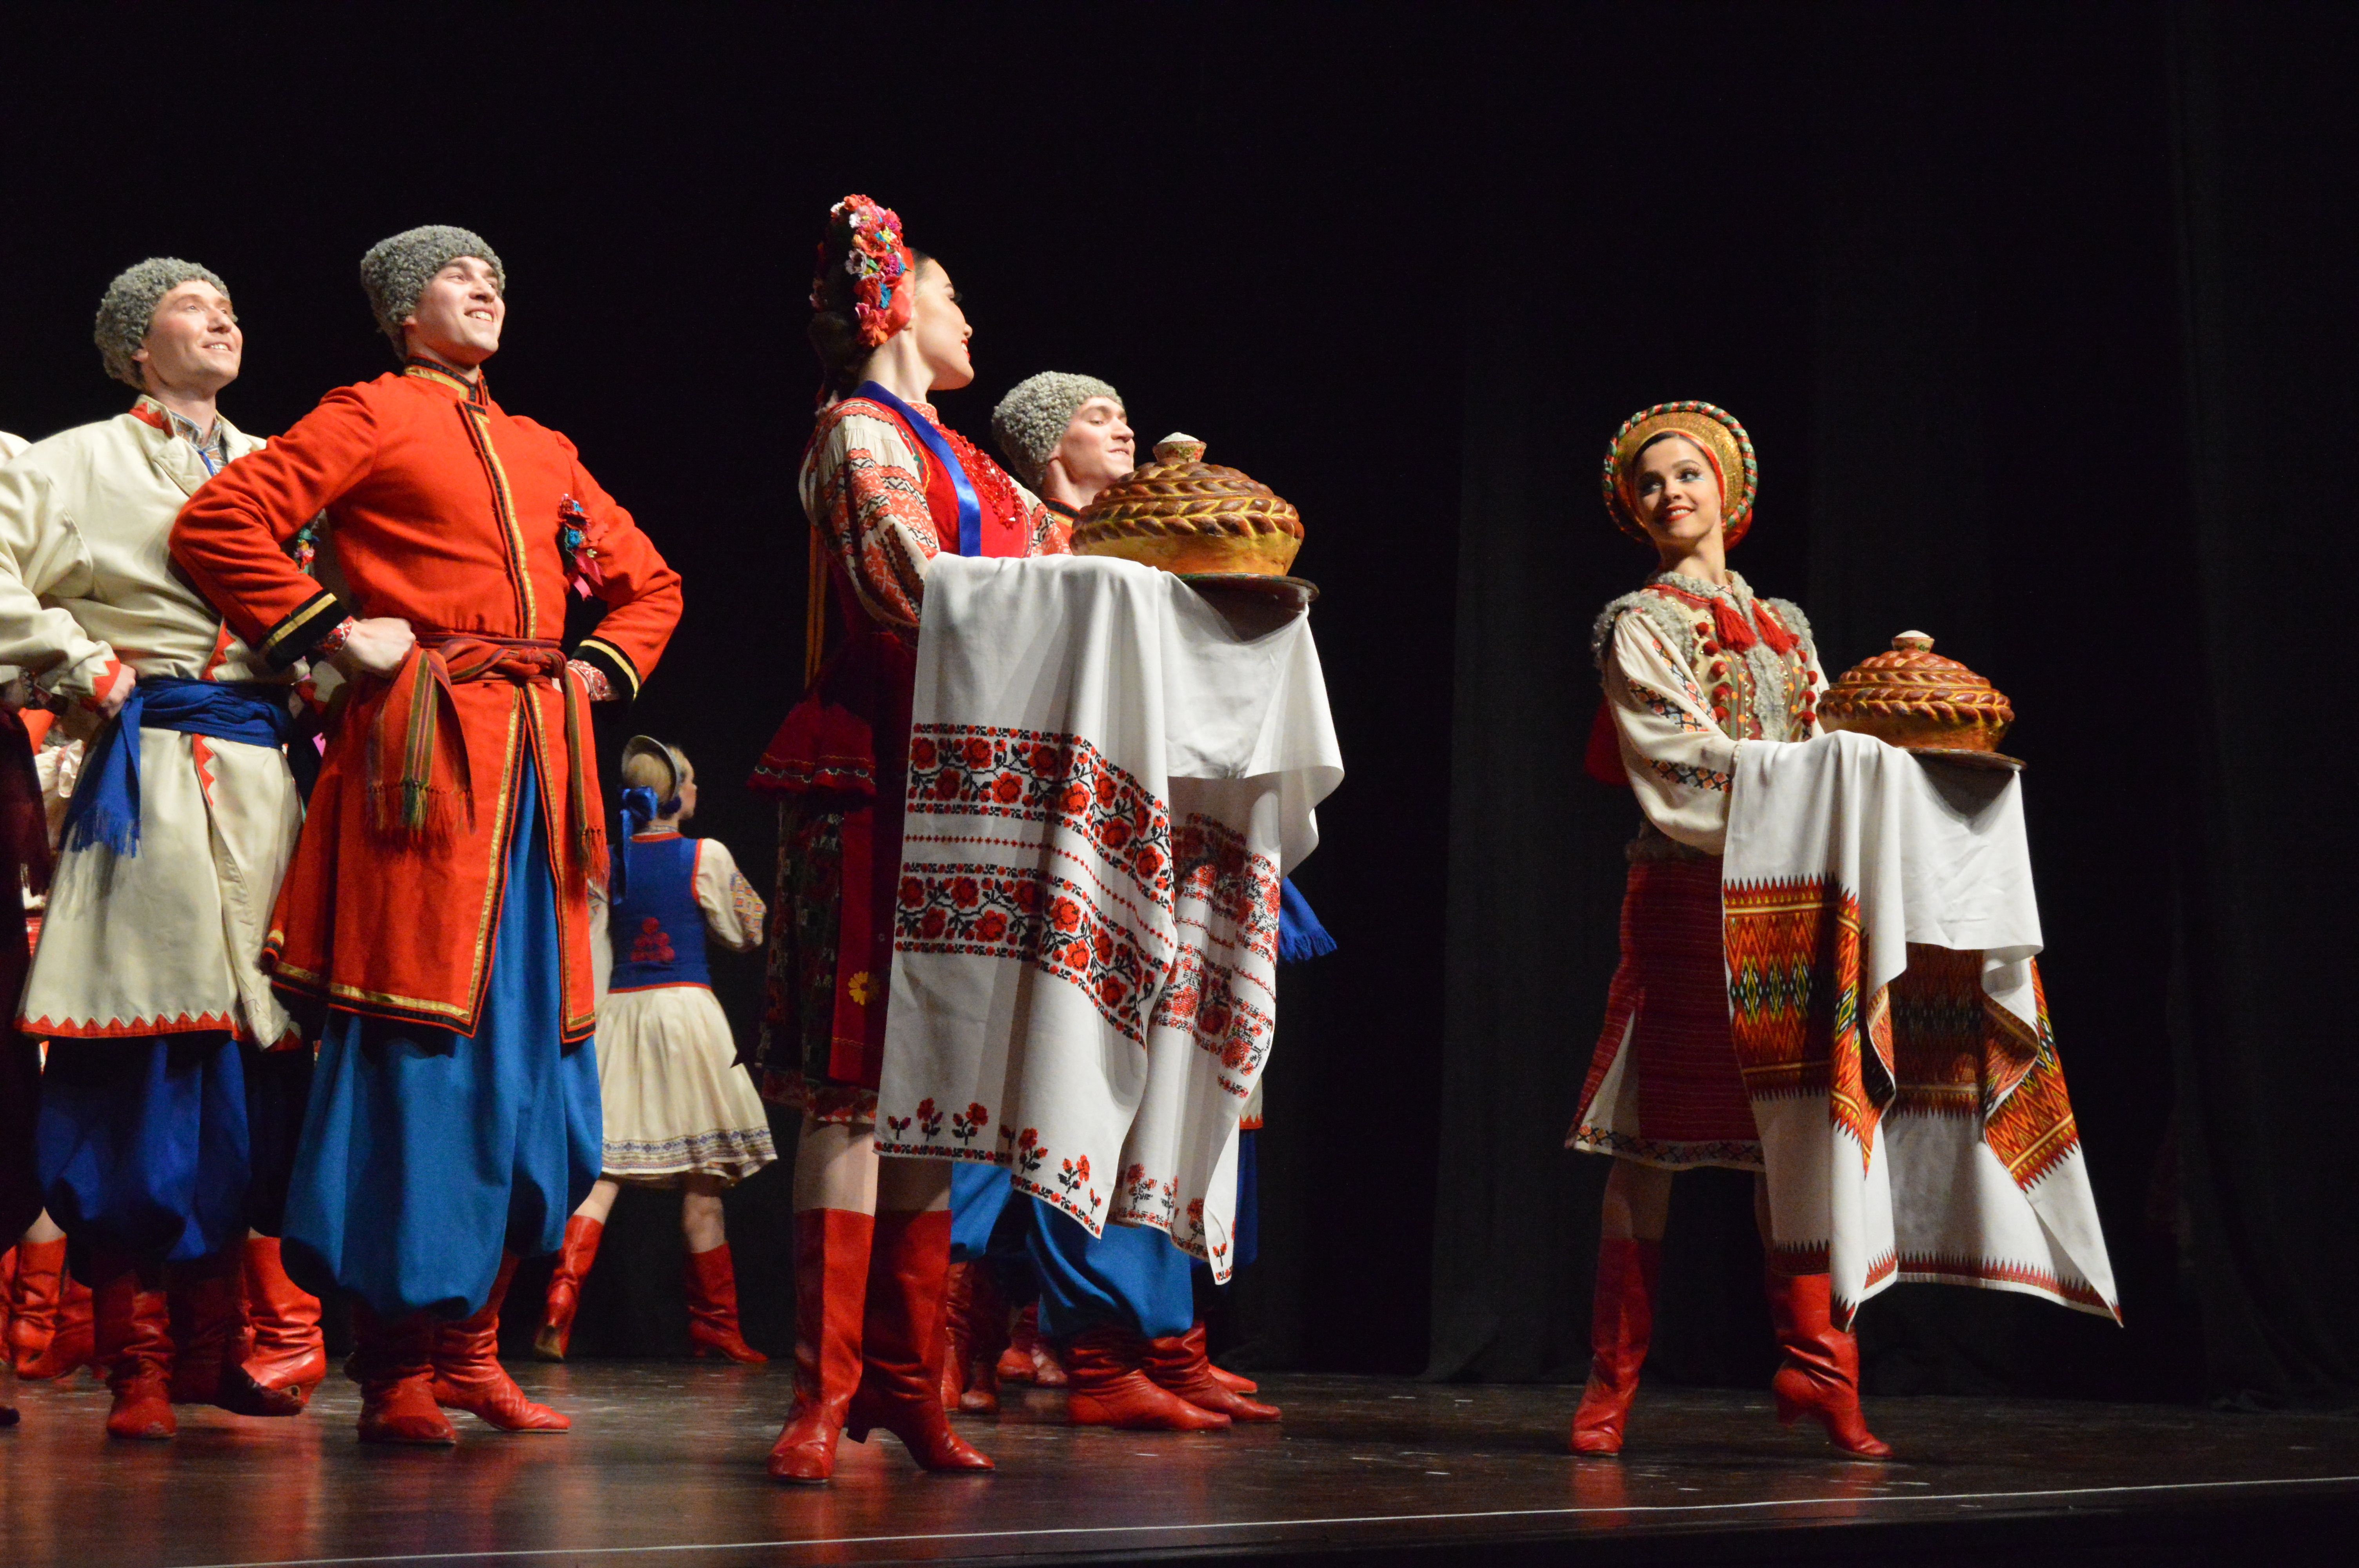 Espectacle de dansa ucraïnesa a l'Ateneu. FOTO. Nora Muñoz Otero